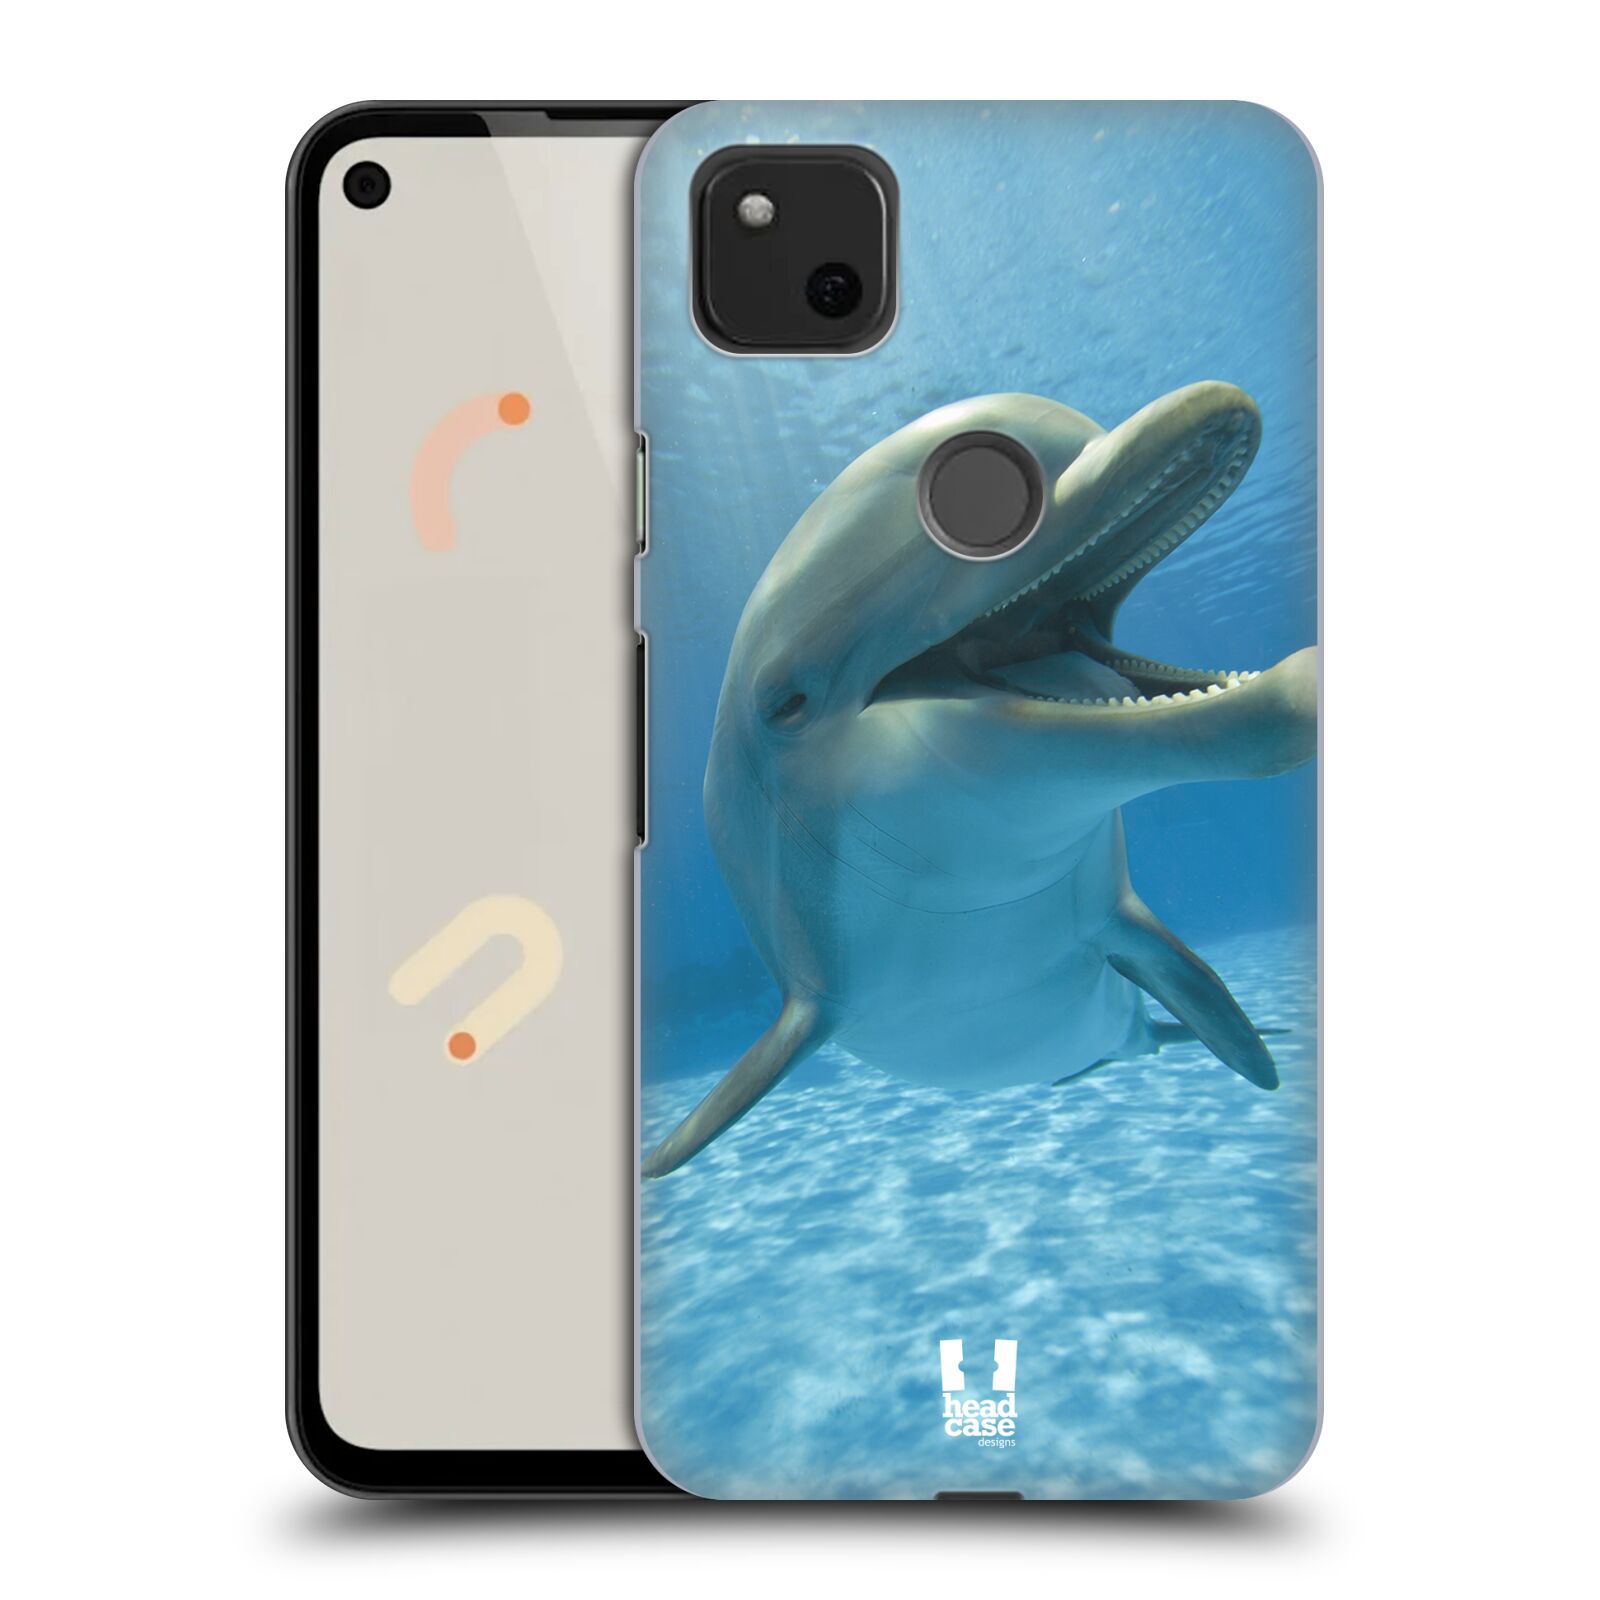 Zadní obal pro mobil Google Pixel 4a - HEAD CASE - Svět zvířat delfín v moři